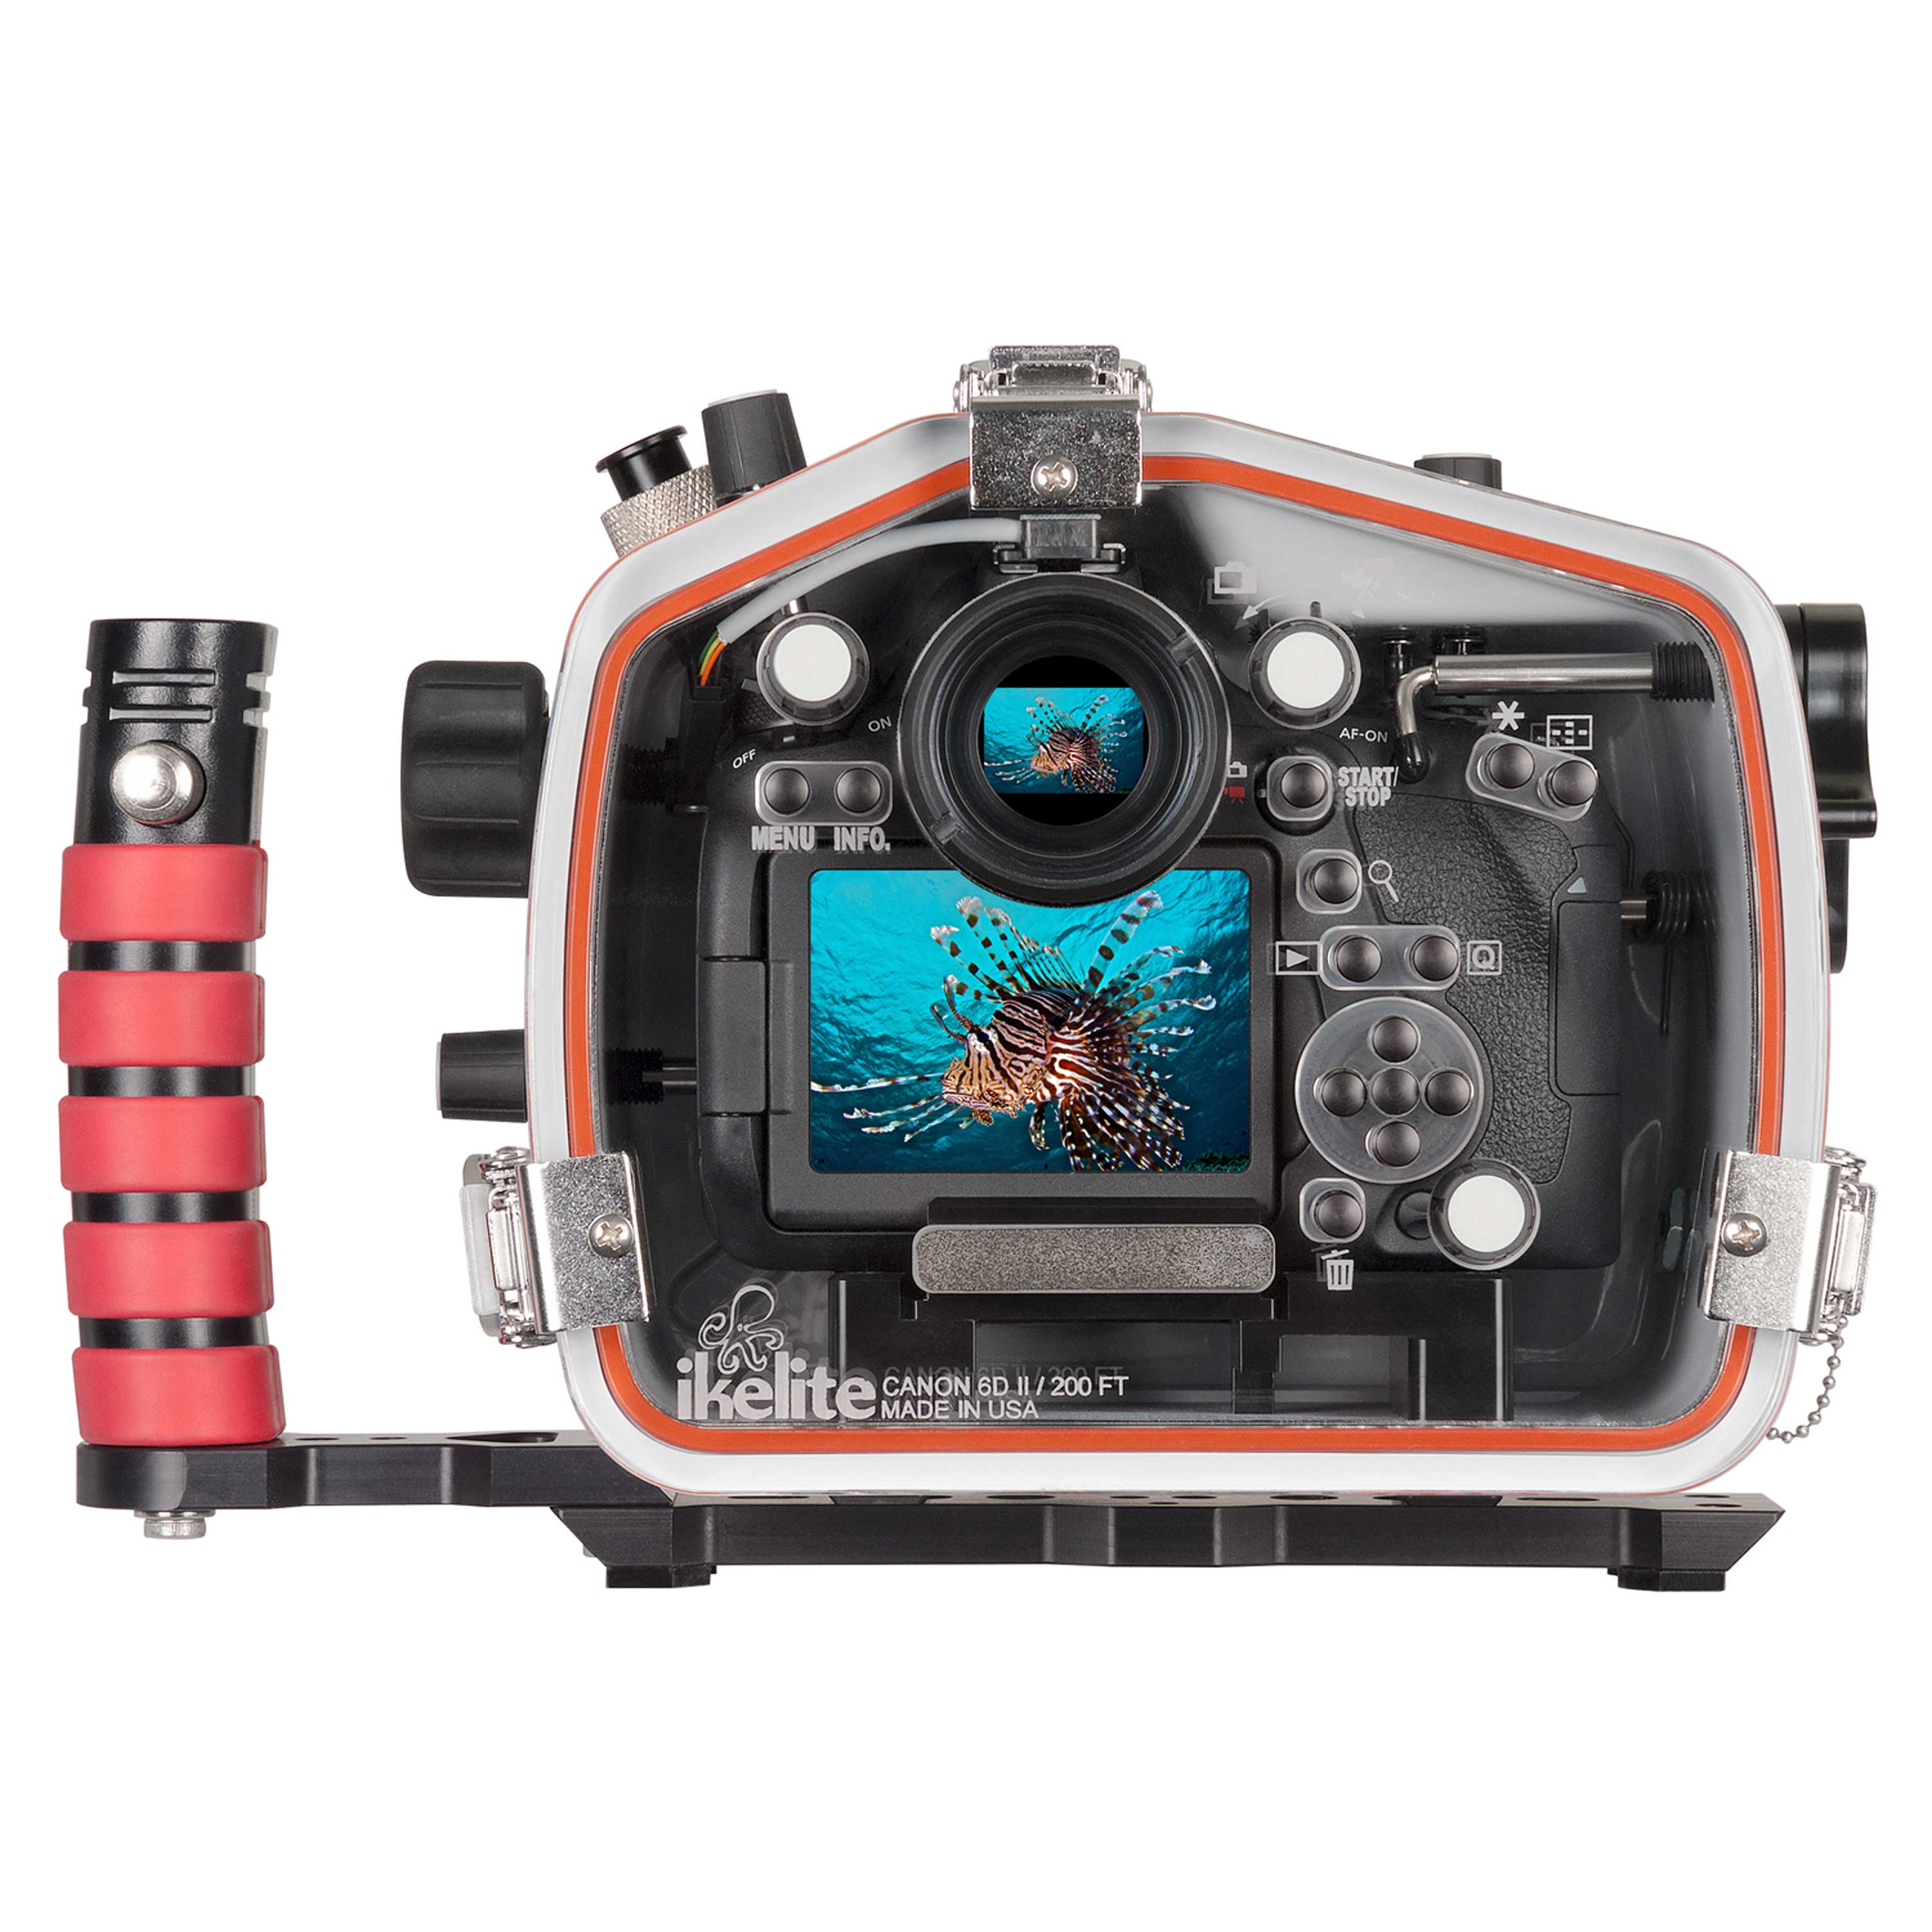 200DL Underwater Housing for Canon EOS 6D Mark II DSLR